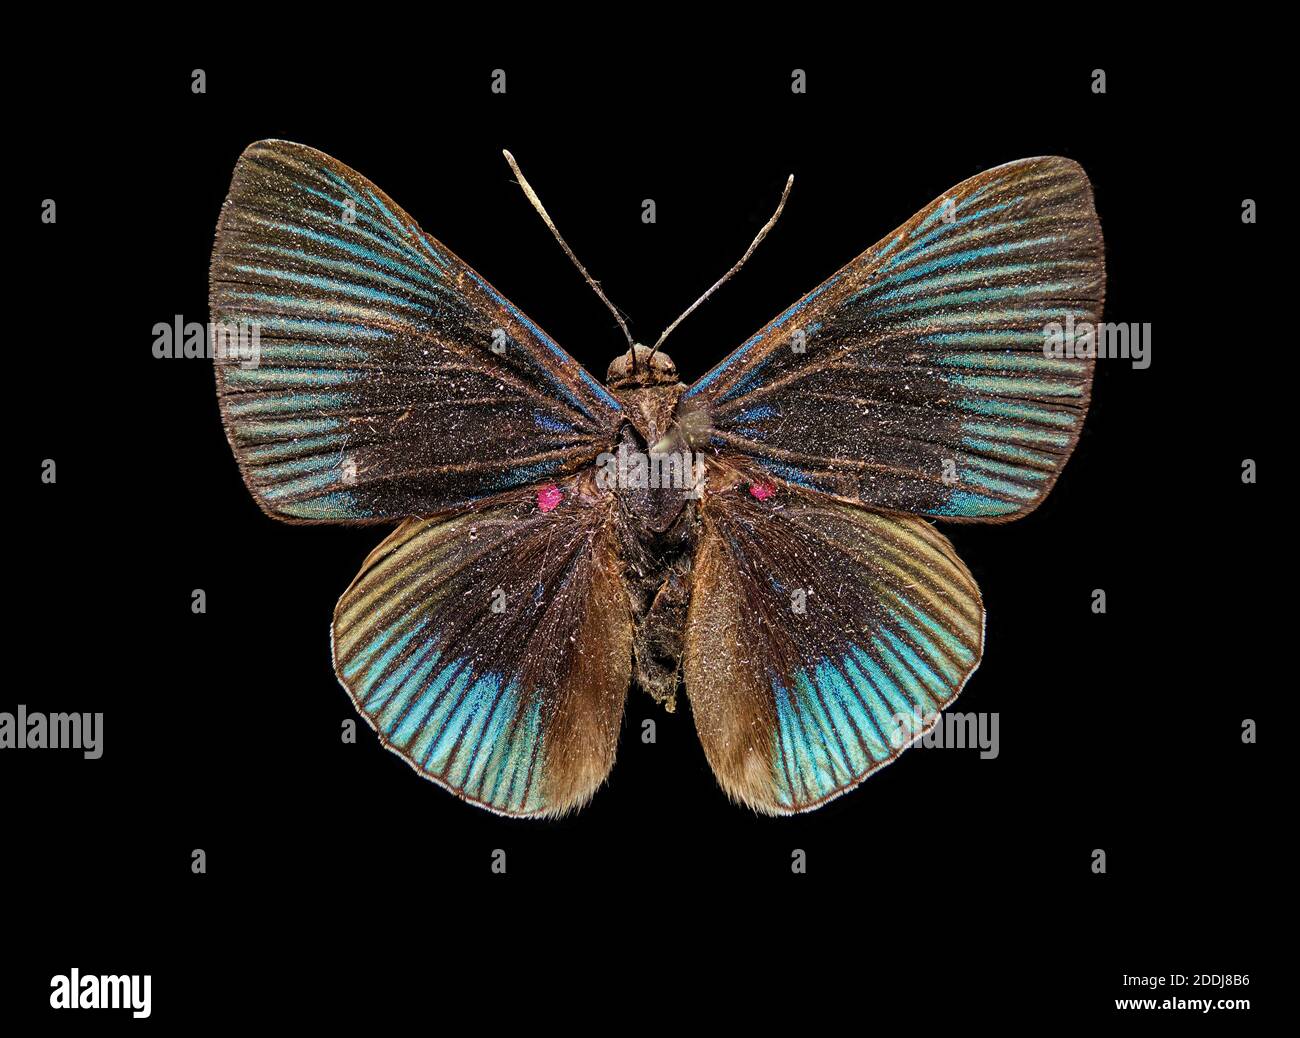 Butterfly, da Chanchamayo, Perù, Sud America, Scienze naturali, Entomologia, Insect Foto Stock